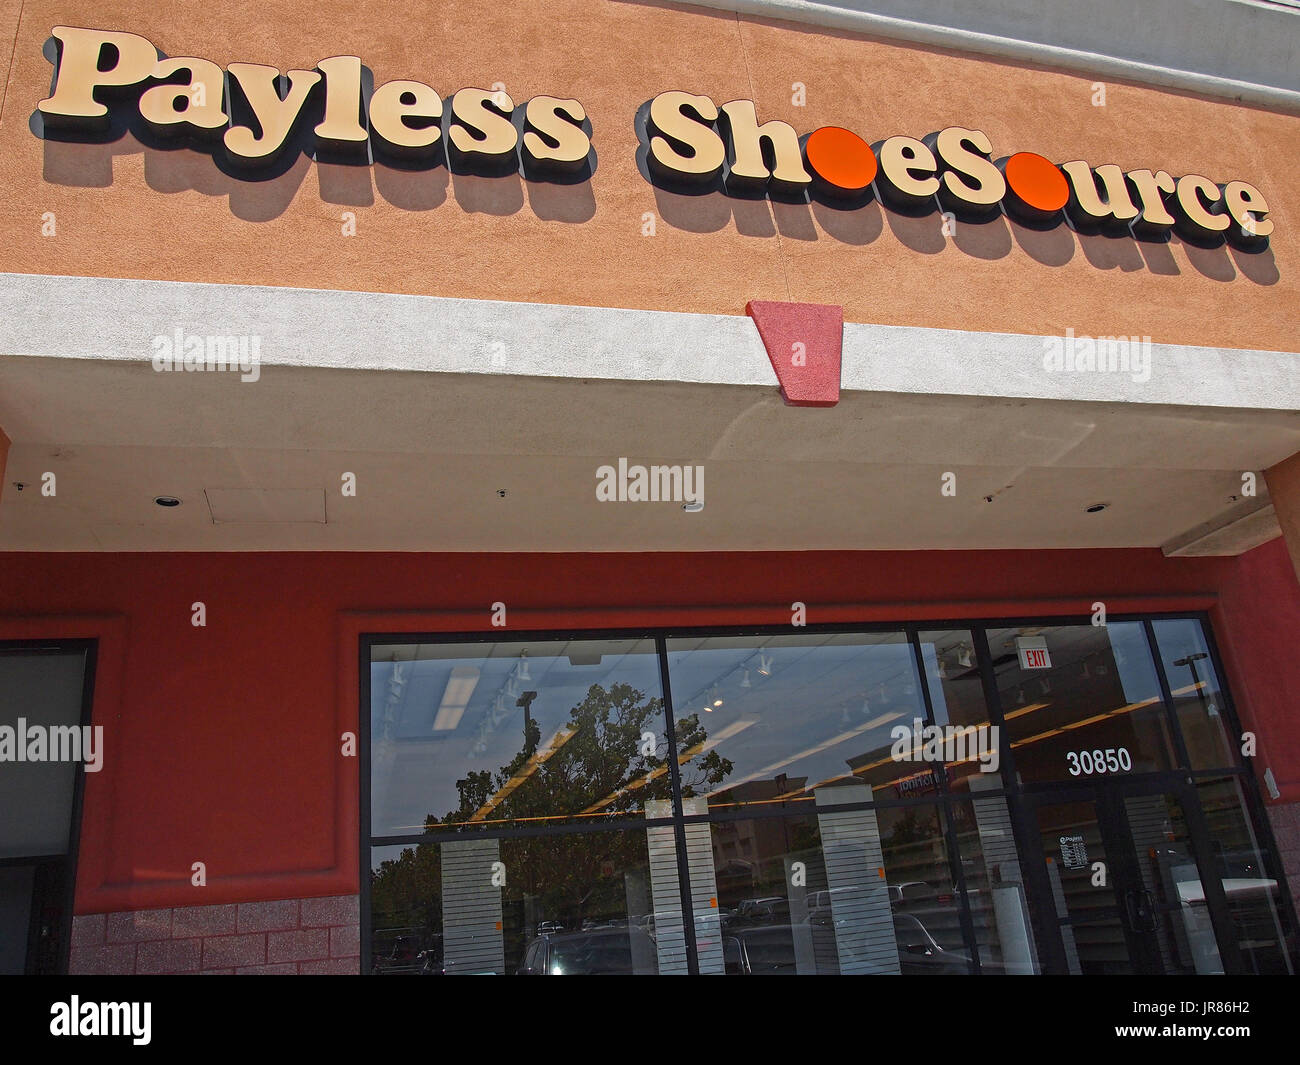 Payless Shoe Quelle Shop in Kalifornien, USA Stockfoto